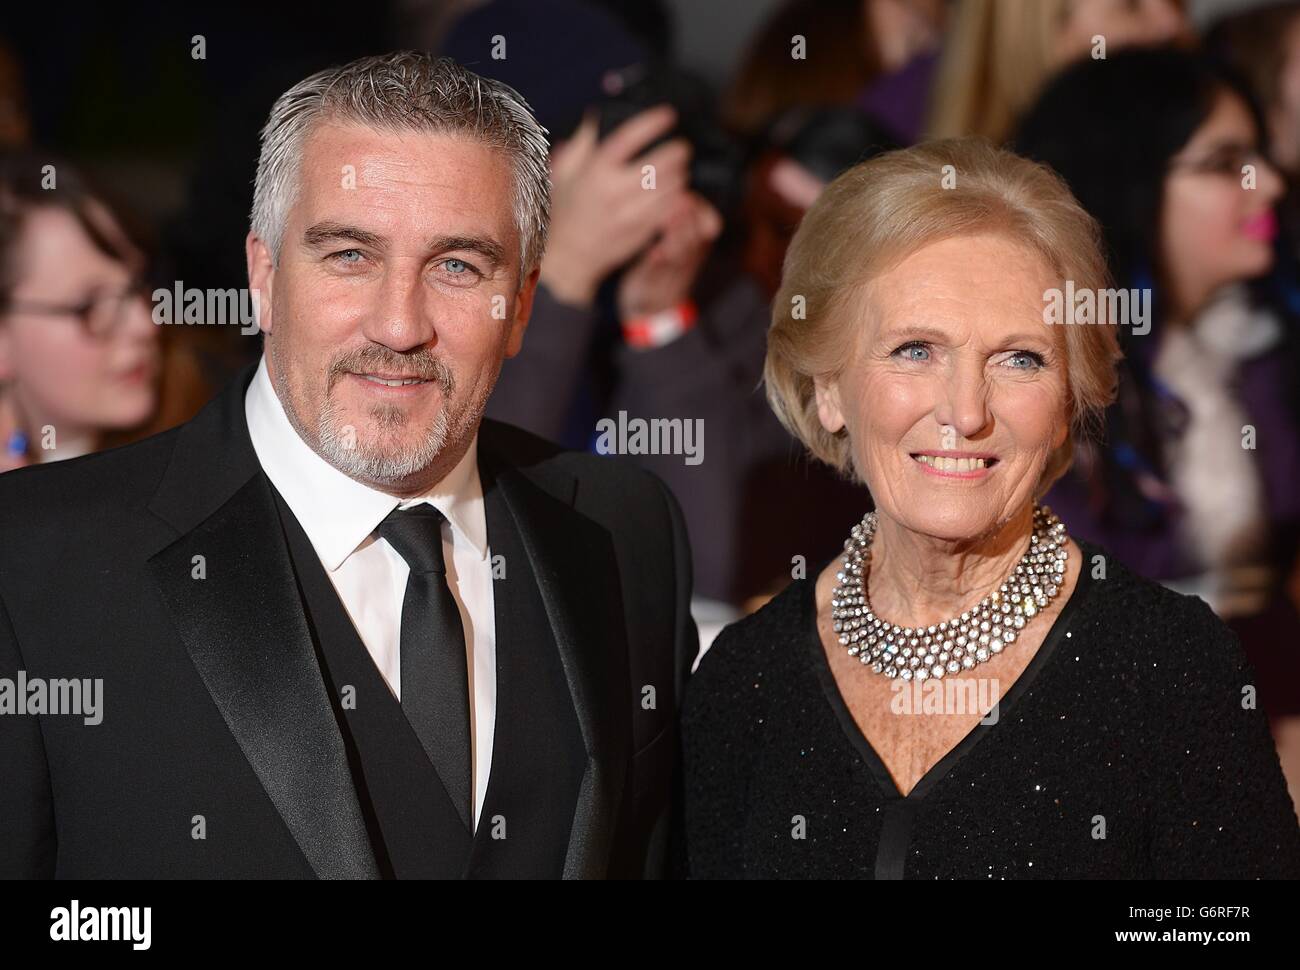 Paul Hollywood et Mary Berry arrivent pour les National Television Awards 2014 à l'O2 Arena de Londres. Banque D'Images